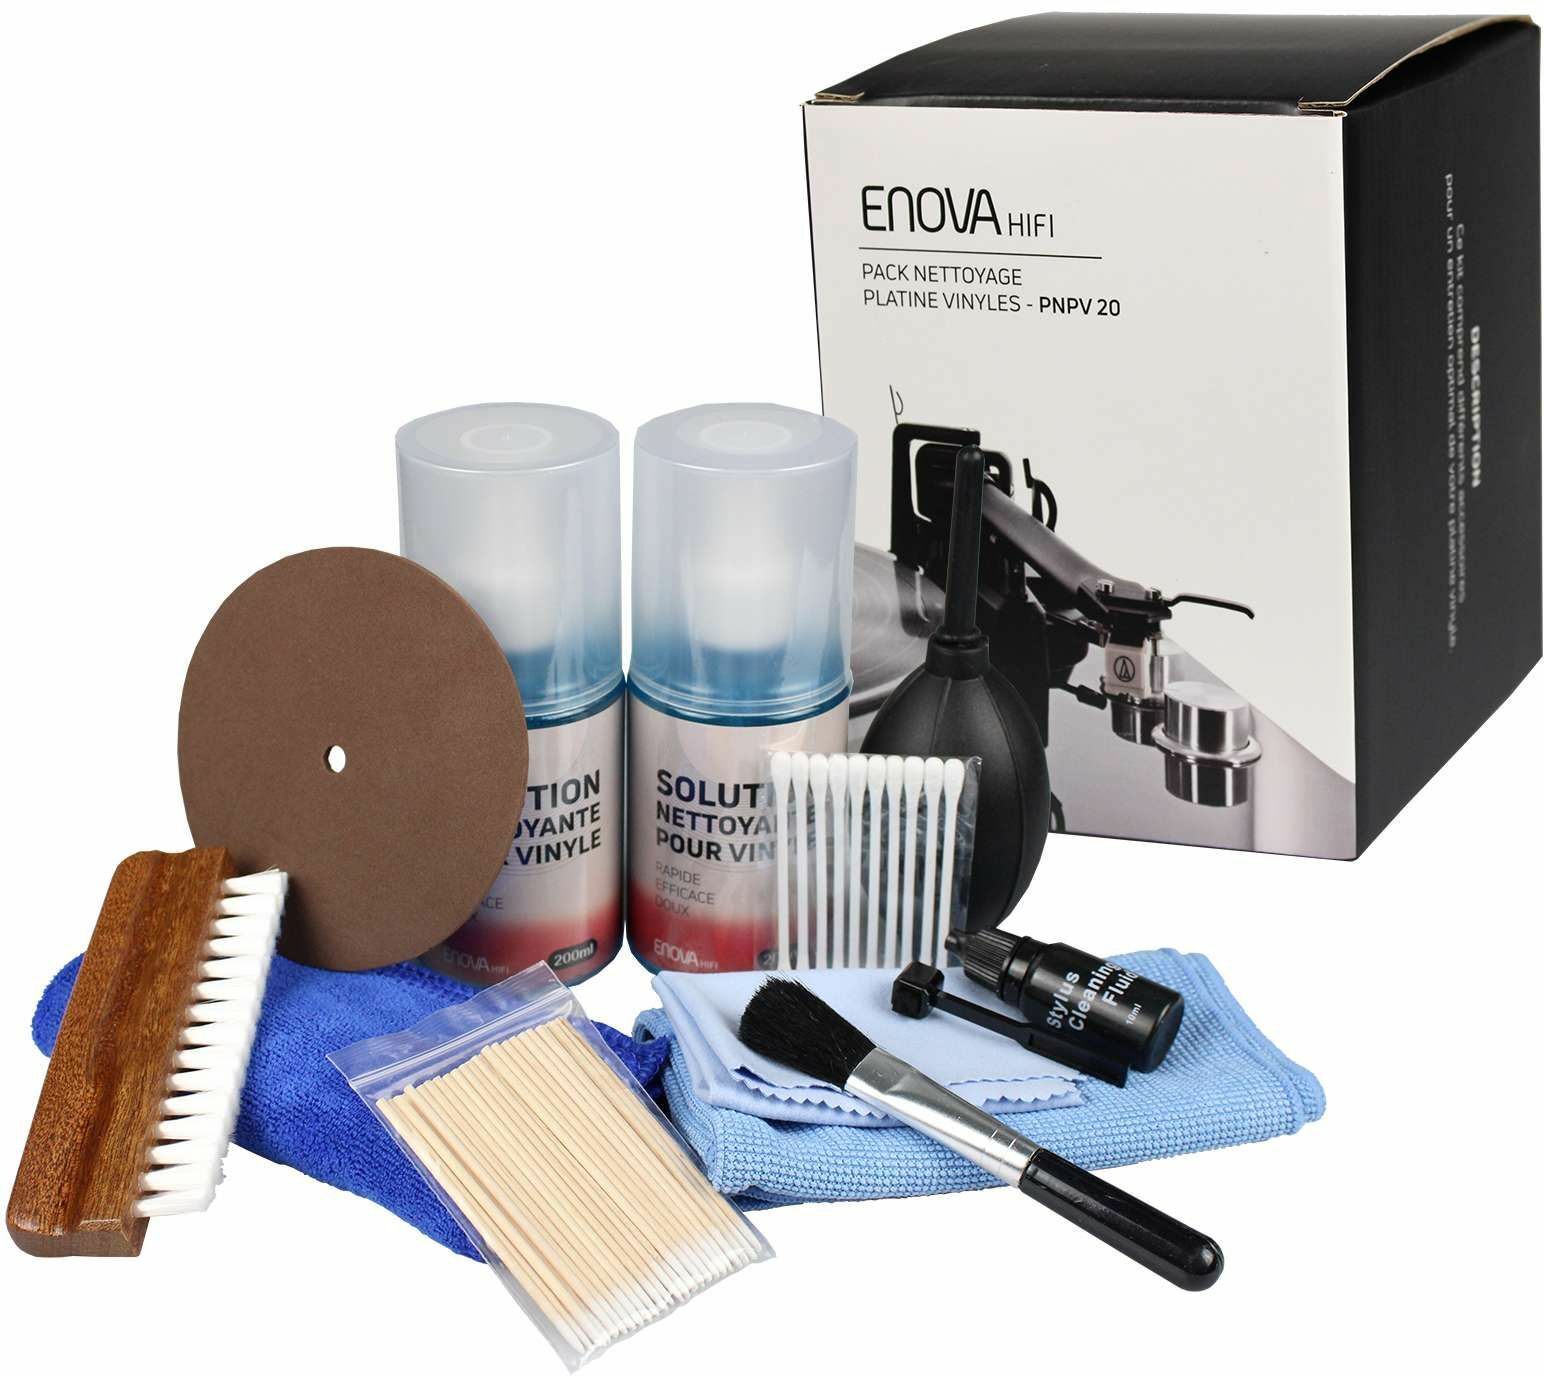 Enova Hifi Pack Nettoyage Platine Vinyle - Pnpv20 - Cleaning kit - Main picture